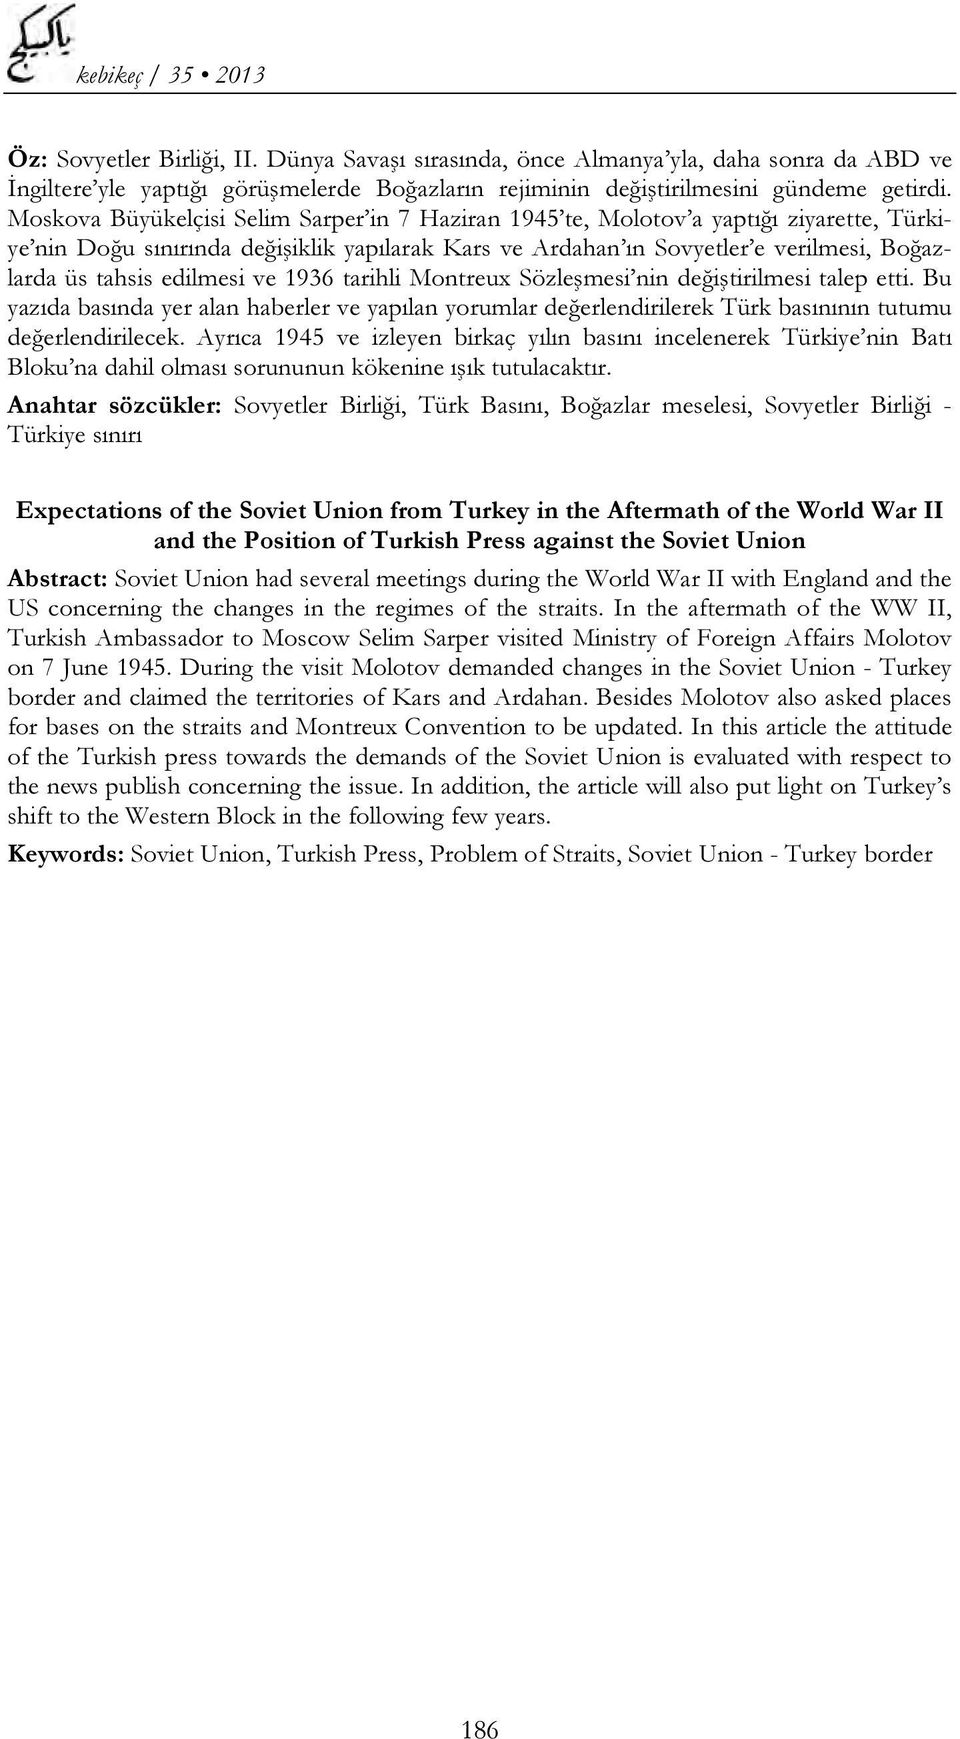 edilmesi ve 1936 tarihli Montreux Sözleşmesi nin değiştirilmesi talep etti. Bu yazıda basında yer alan haberler ve yapılan yorumlar değerlendirilerek Türk basınının tutumu değerlendirilecek.